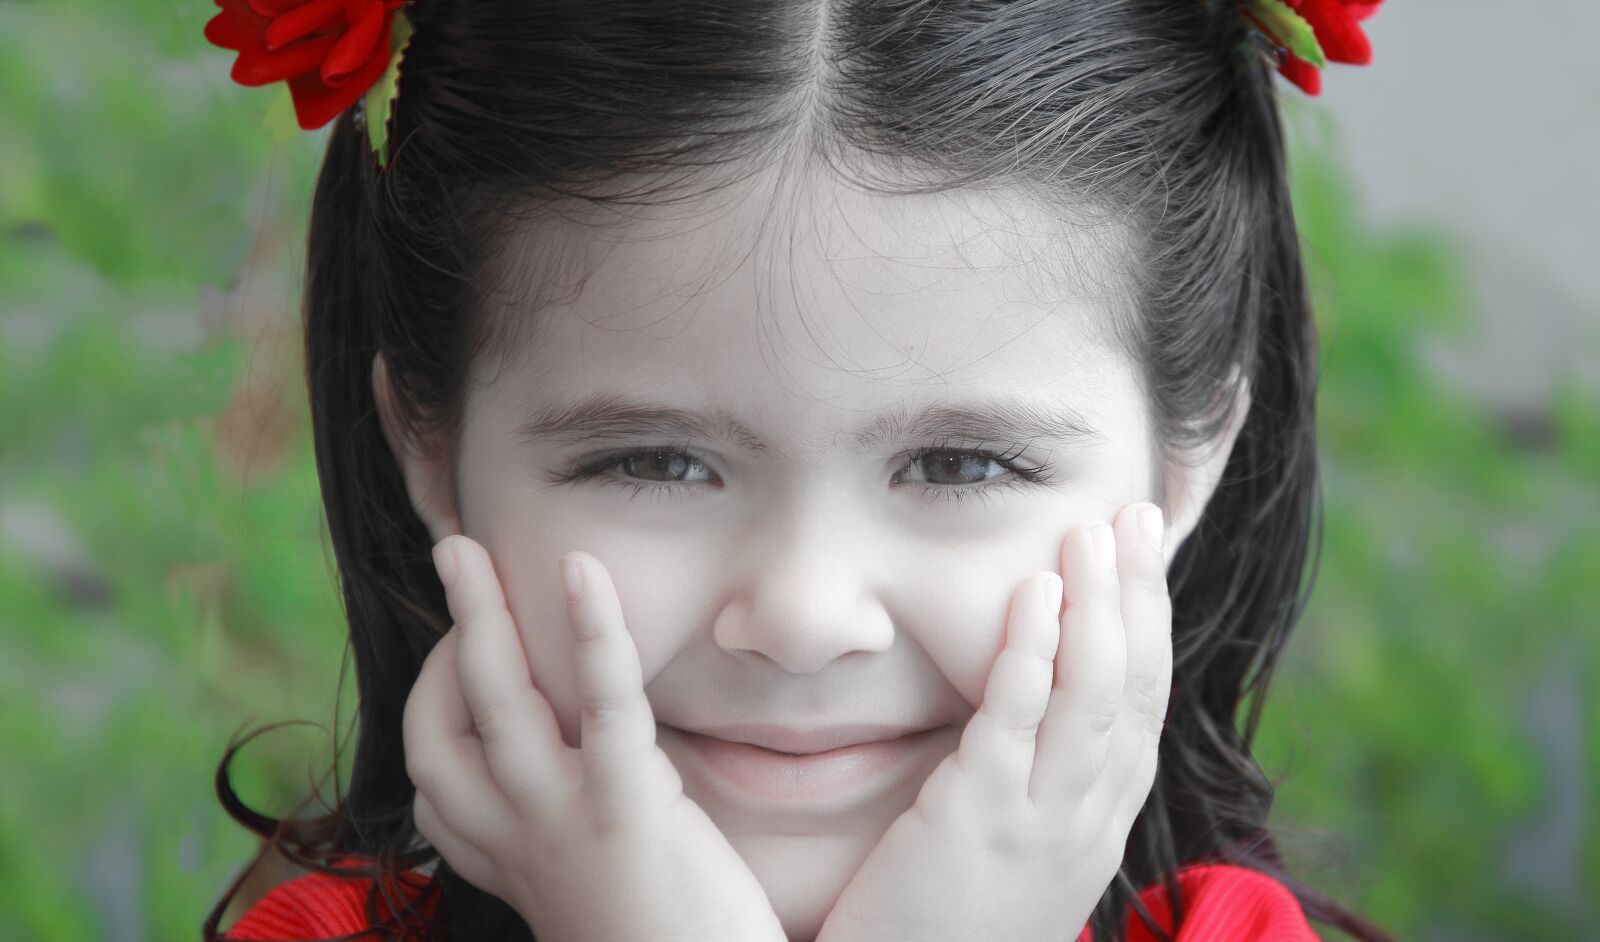 Canon EOS 60D sample photo. Small girl, face, cute photography